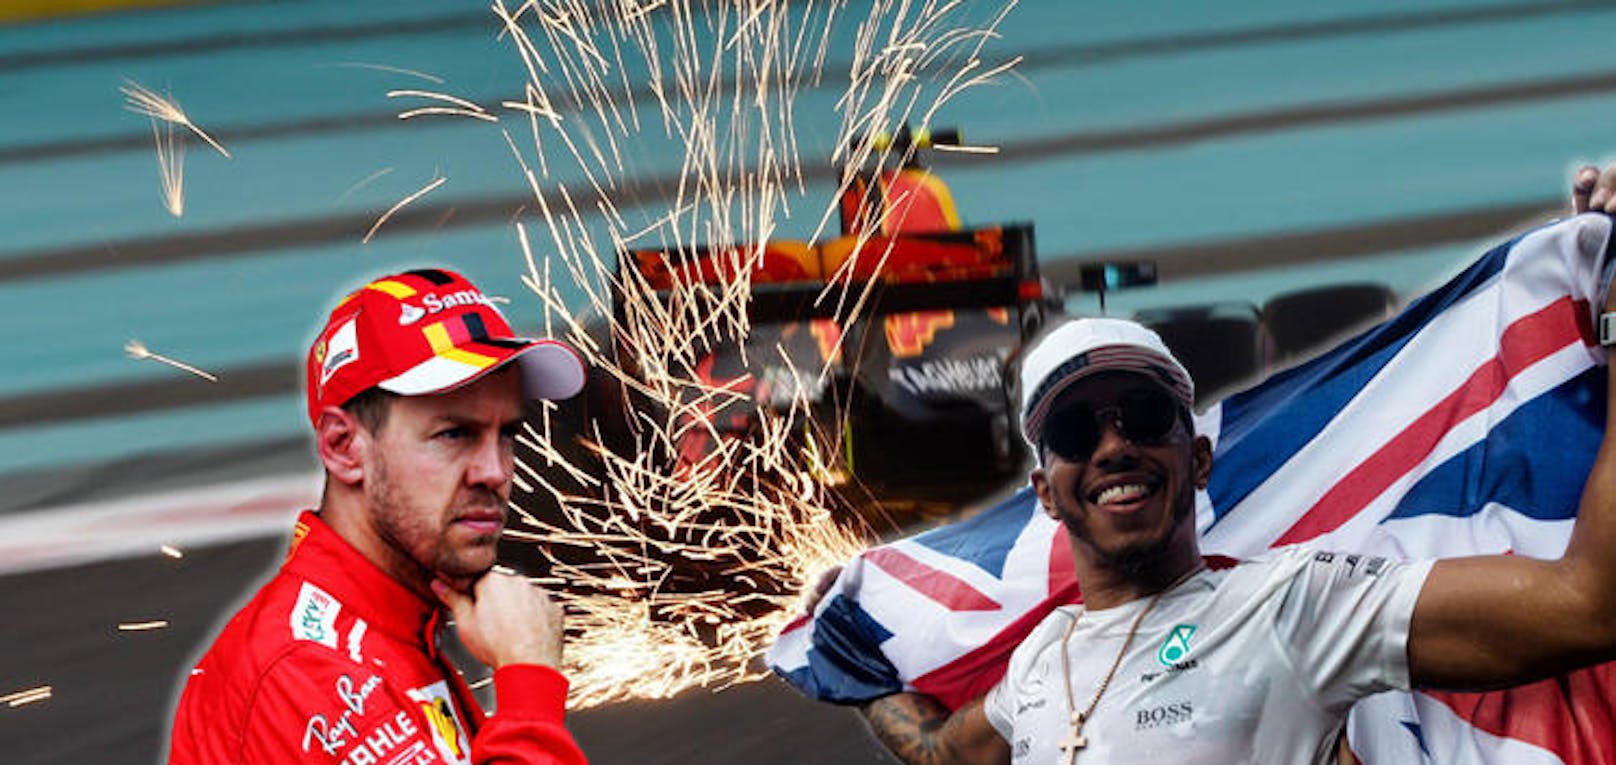 Skandal! Die Formel 1 war diese Saison spannend wie lange nicht mehr. Lewis Hamilton und Sebastian Vettel lieferten sich lange einen Fight auf Augenhöhe - der Brite setzte sich am Ende doch noch deutlich durch.
In der heißen Phase der Saison flogen aber gewaltig die Fetzen. Die beiden Streithähne lieferten sich harte Duelle auf der Strecke und trugen verbale Kämpfe über die Medien aus.
Das negative Highlight: In Baku eskalierte der Streit, Vettel fuhrt Hamilton absichtlich ins Auto.